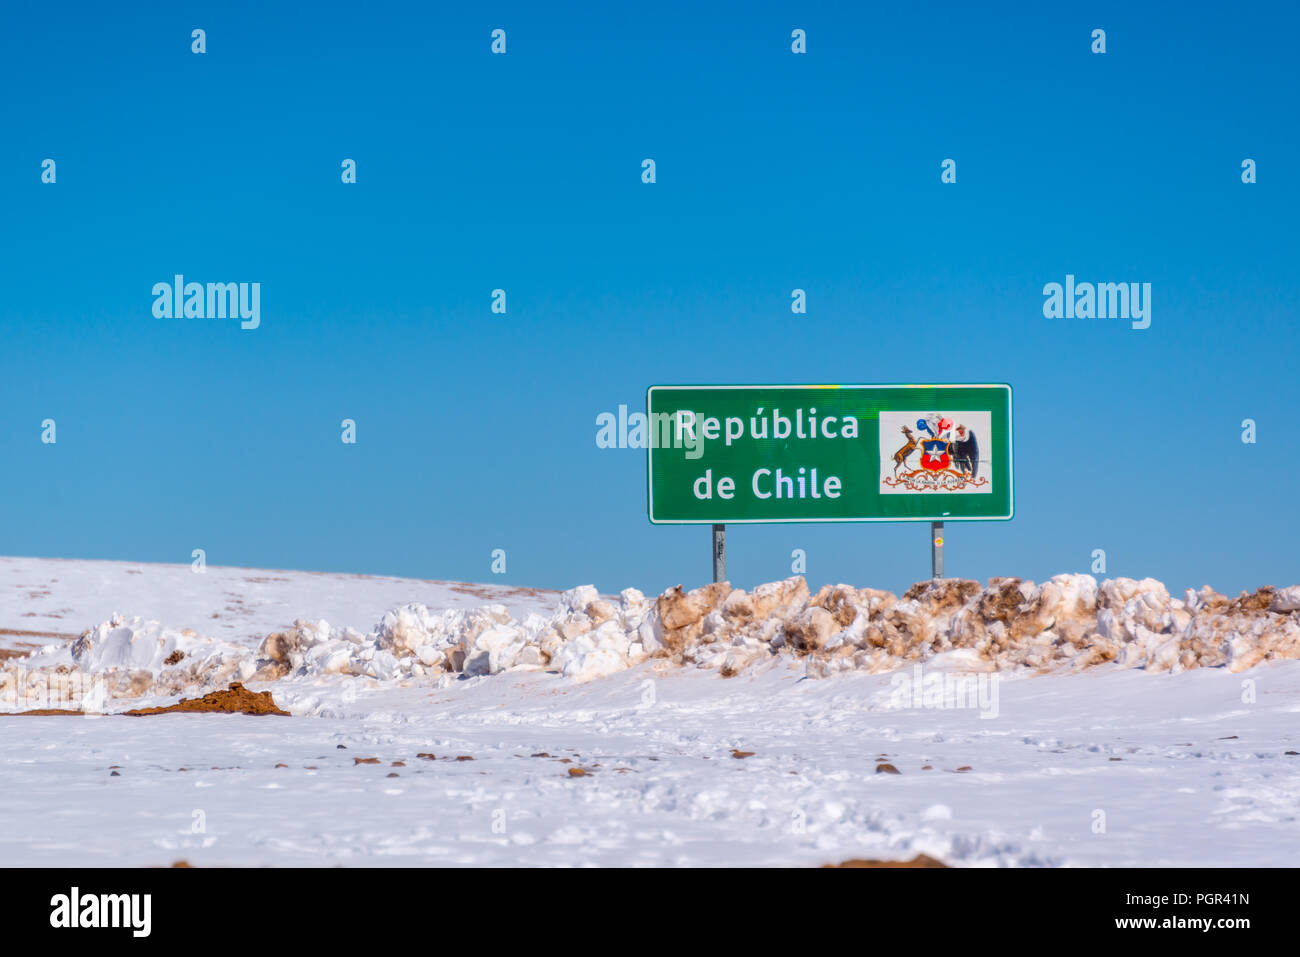 Cartello stradale Republica de Chile sulla strada coperta di neve al confine con la Bolivia Foto Stock